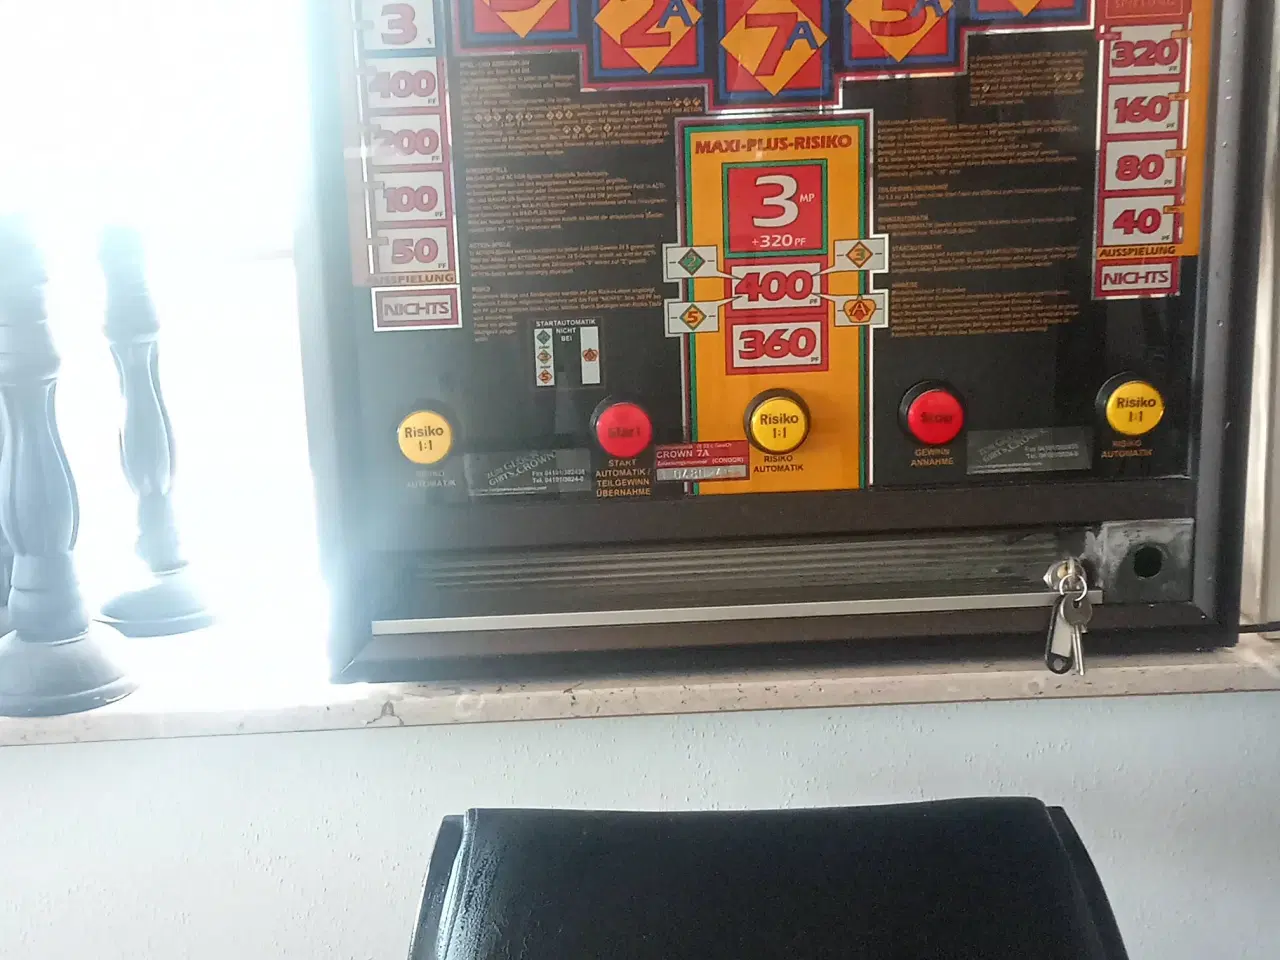 Billede 1 - flot spilleautomat